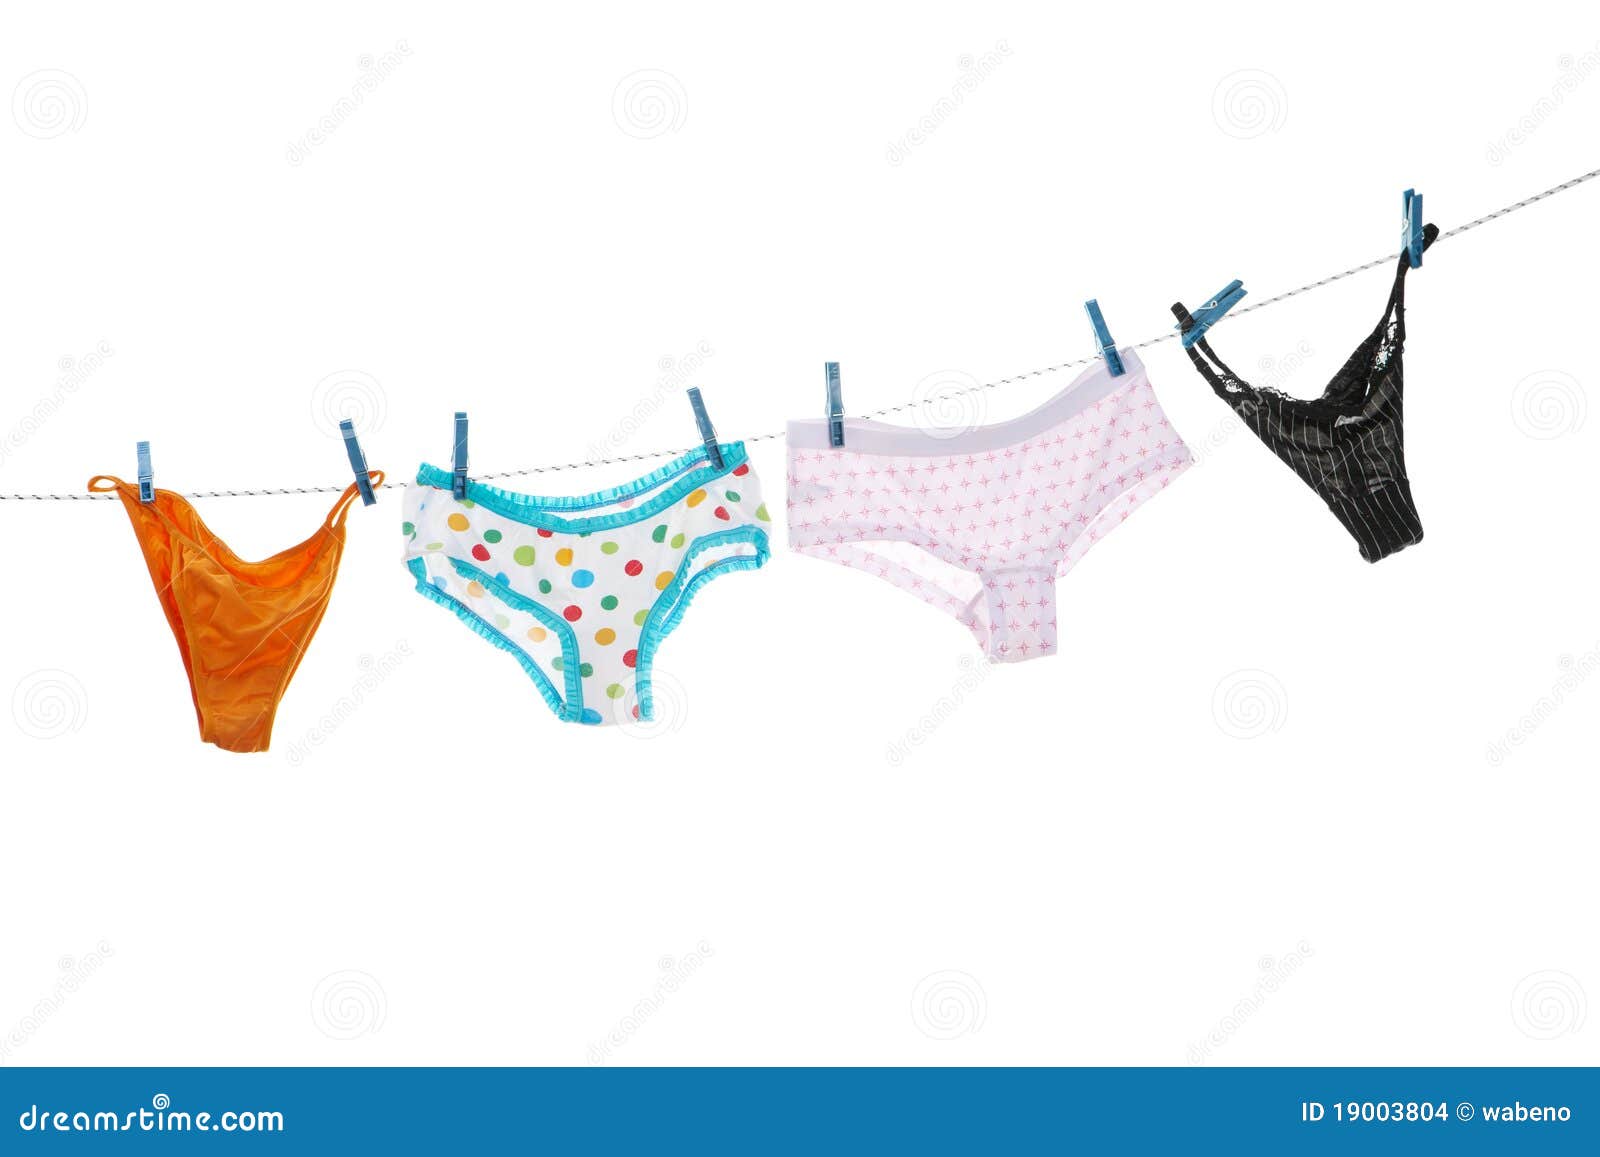 thong underwear clipart - photo #29